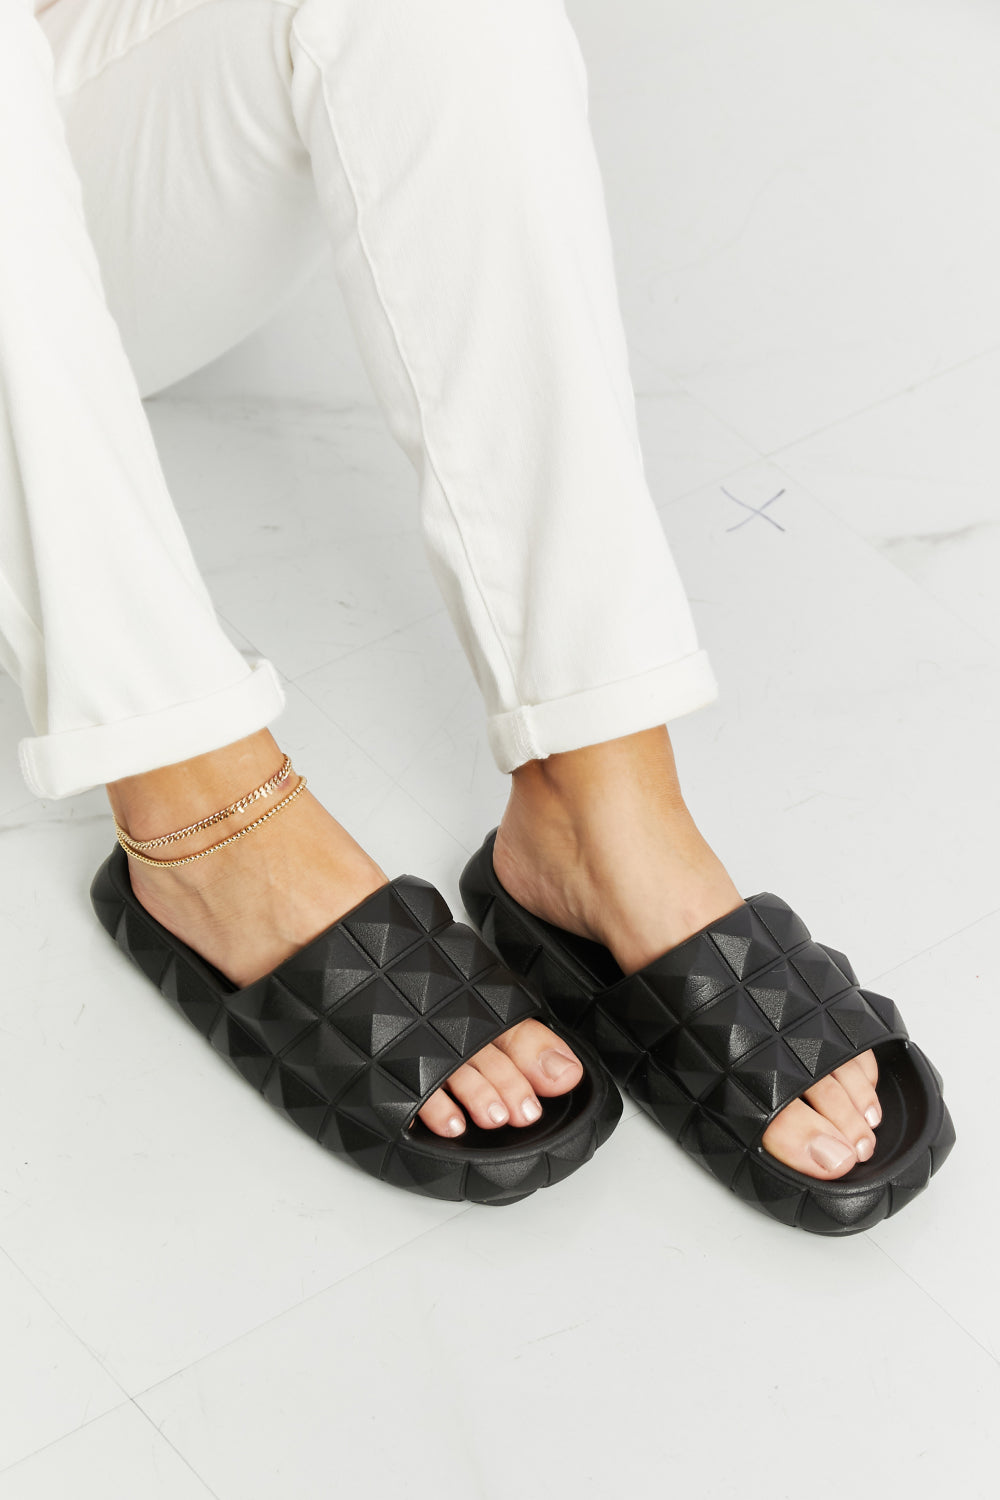 Legend Let's Chill 3D Stud Slide Sandal - nailedmoms